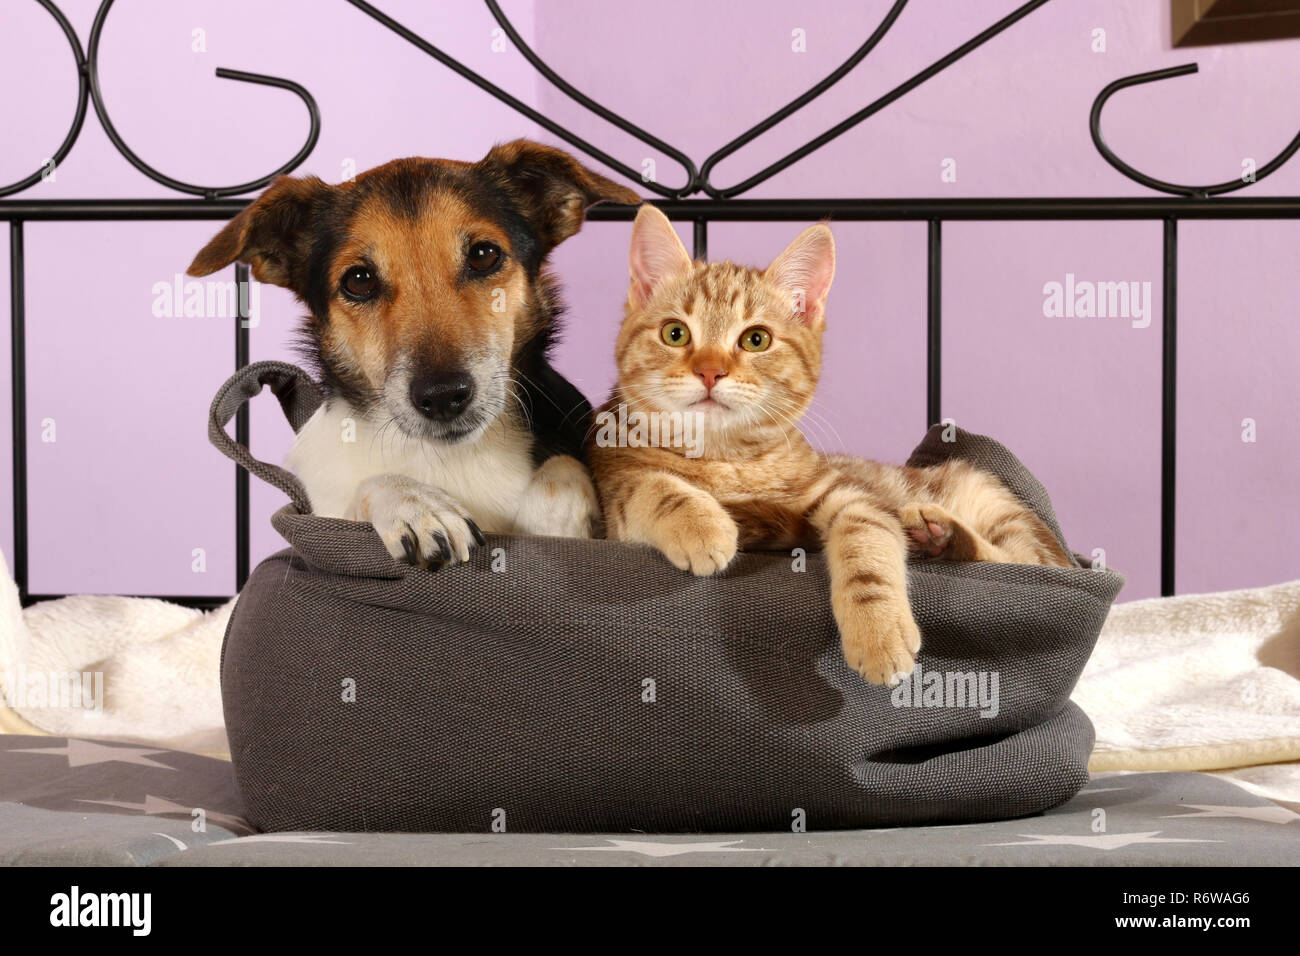 Chien Jack Russell (tricolor) et jeune chat (red tabby) couché dans un panier Banque D'Images